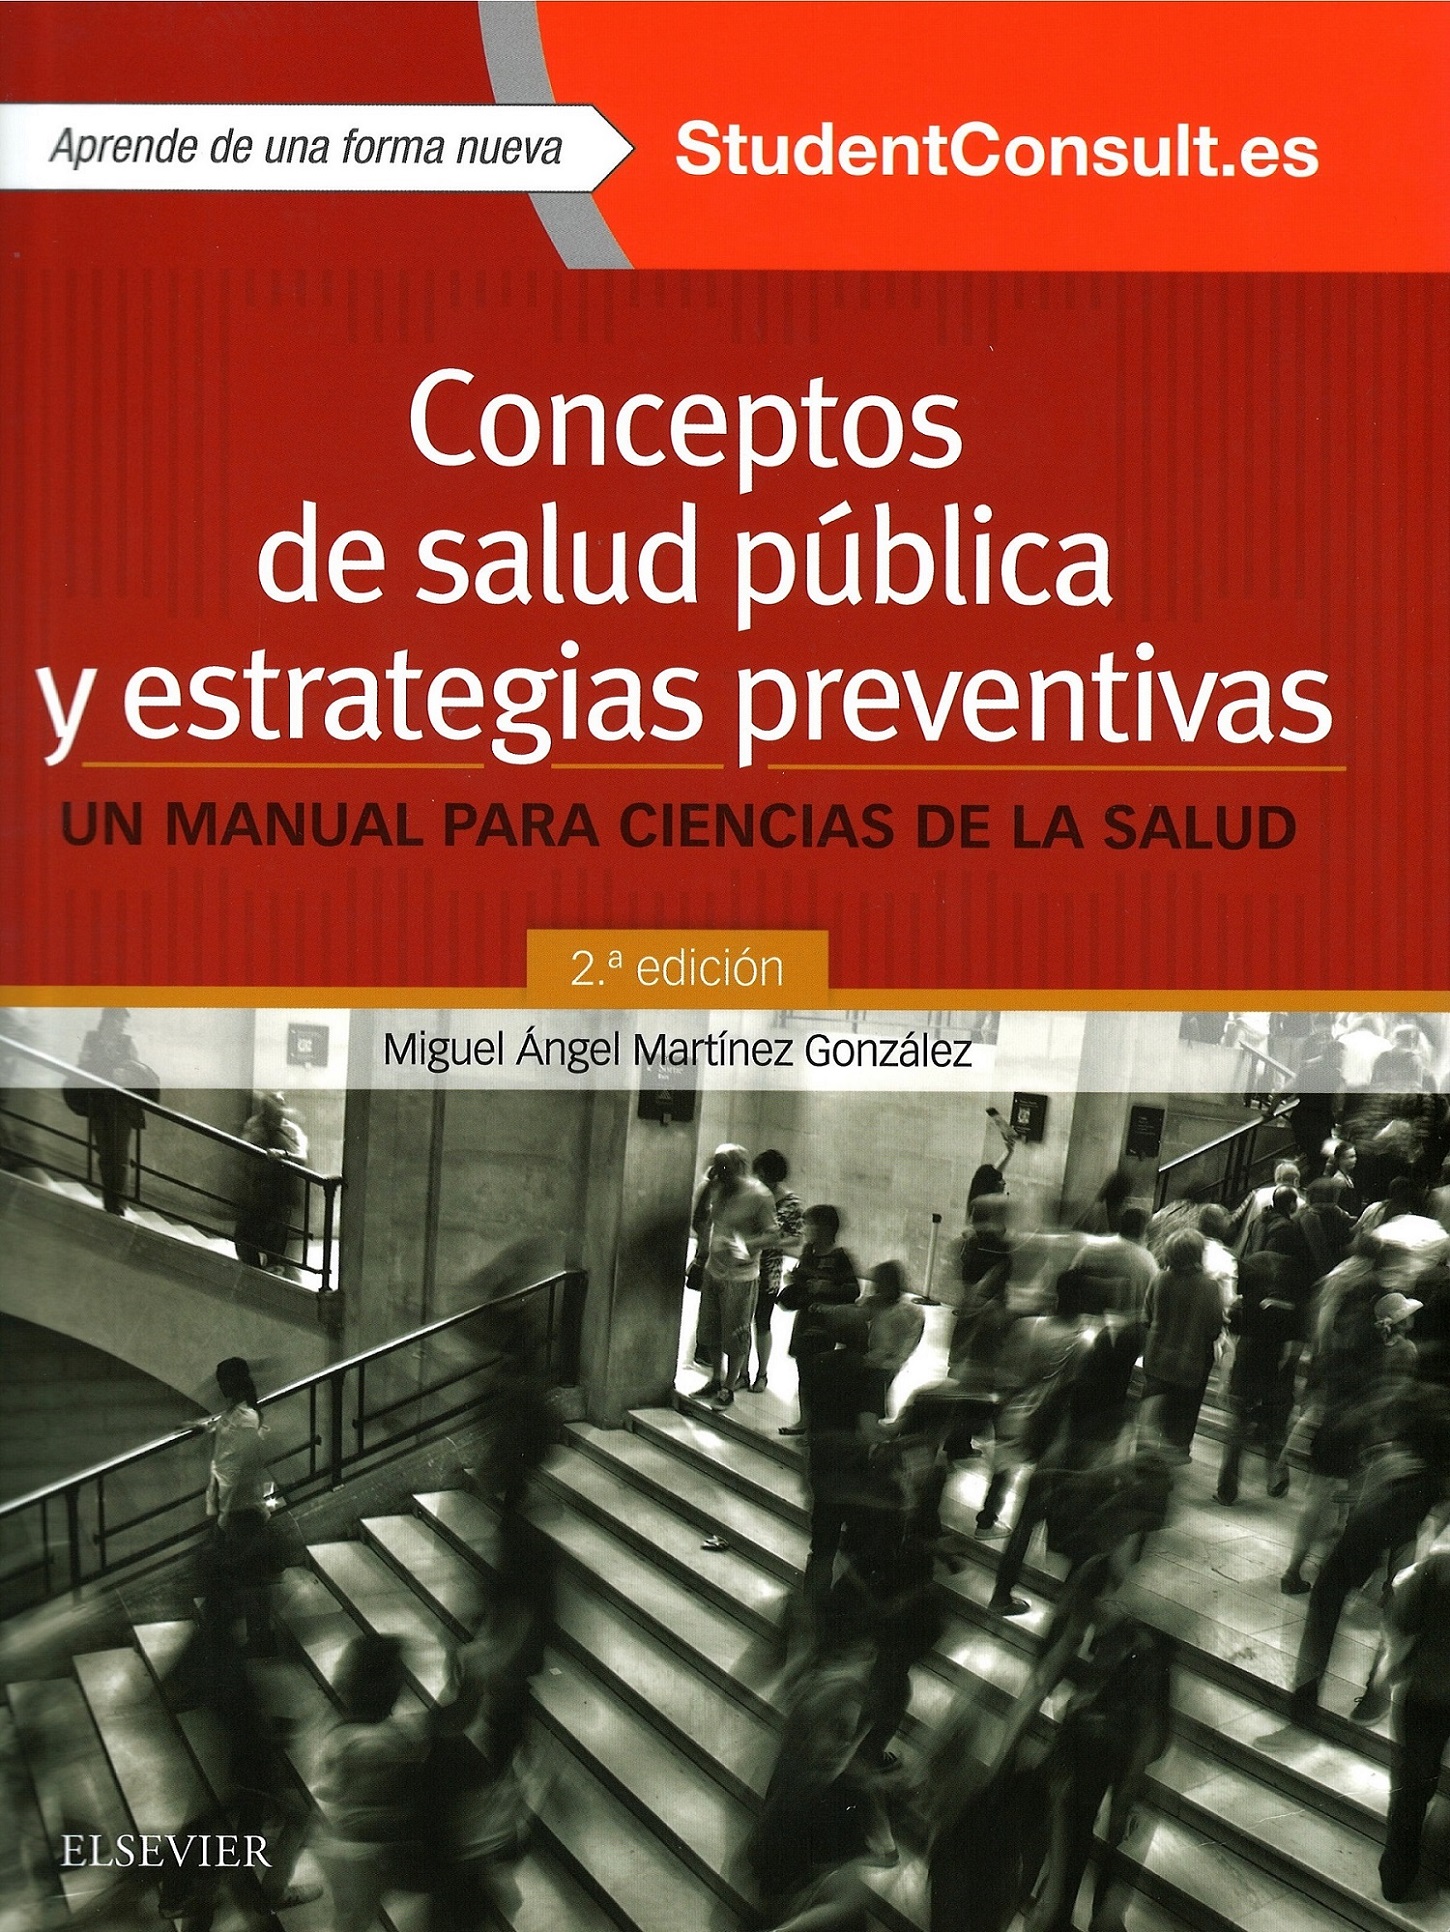 Imagen de portada del libro Conceptos de salud pública y estrategias preventivas